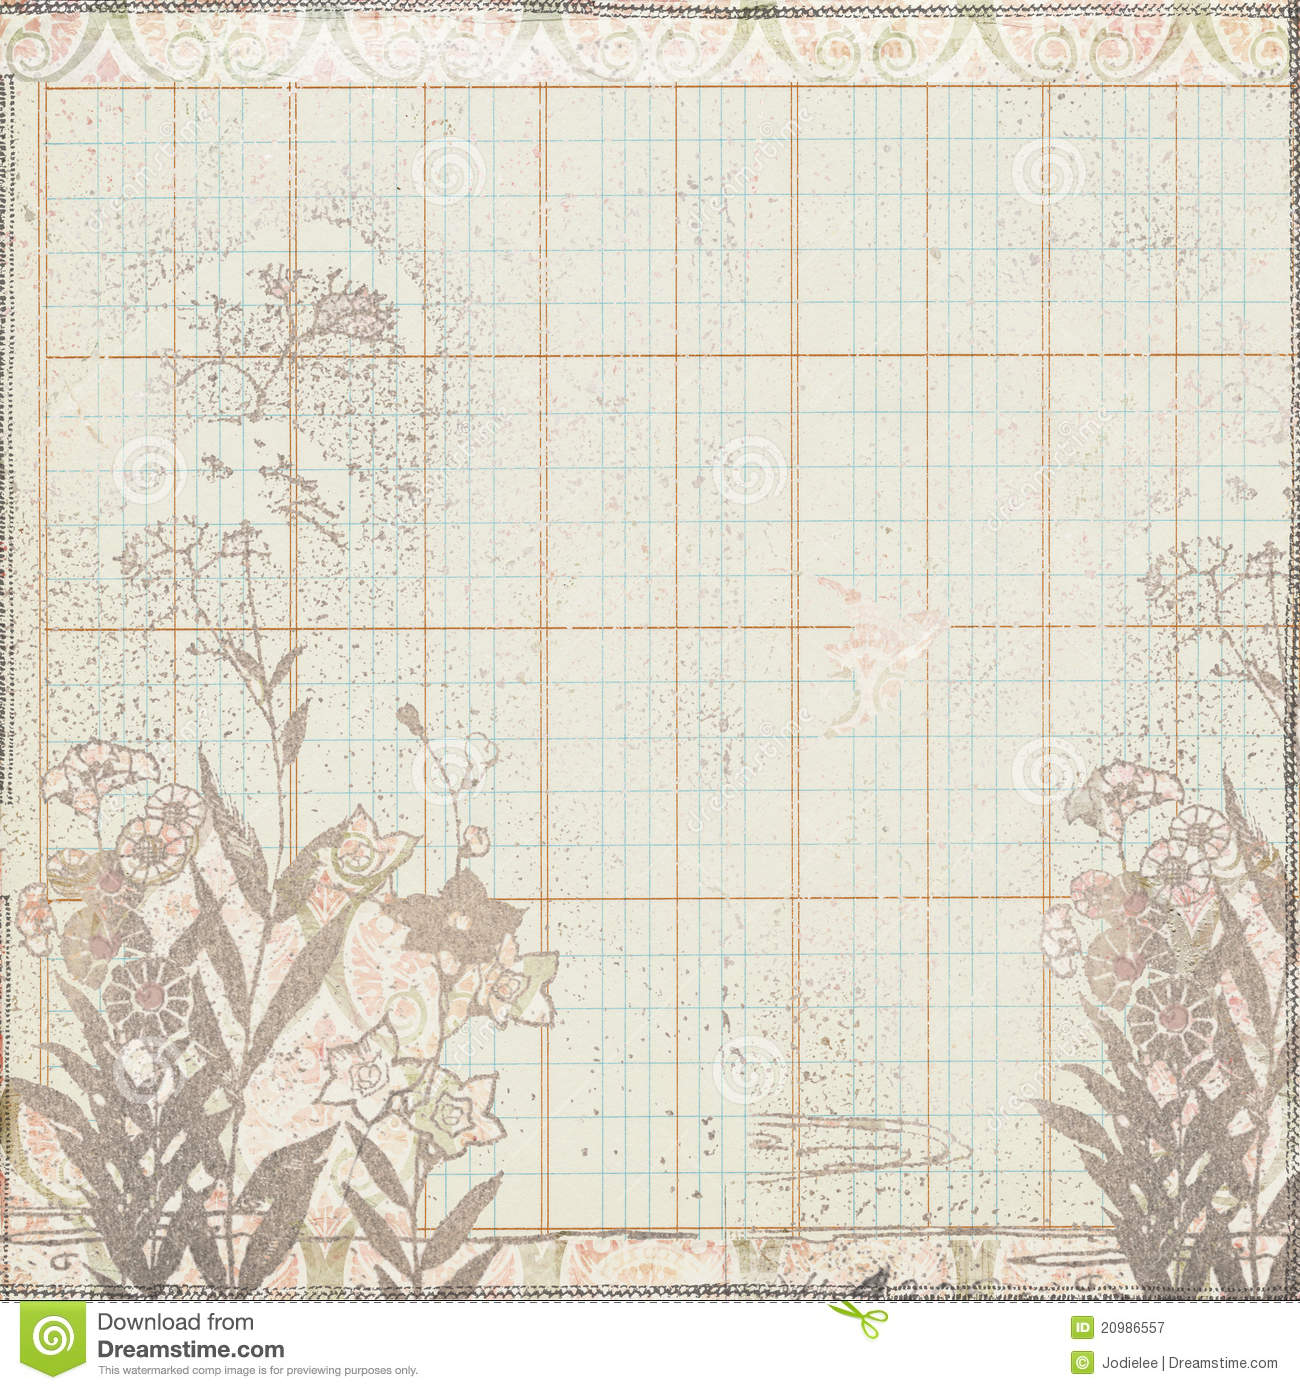 Free Stock Photography  Vintage Botanical Floral Frame On Ledger Paper